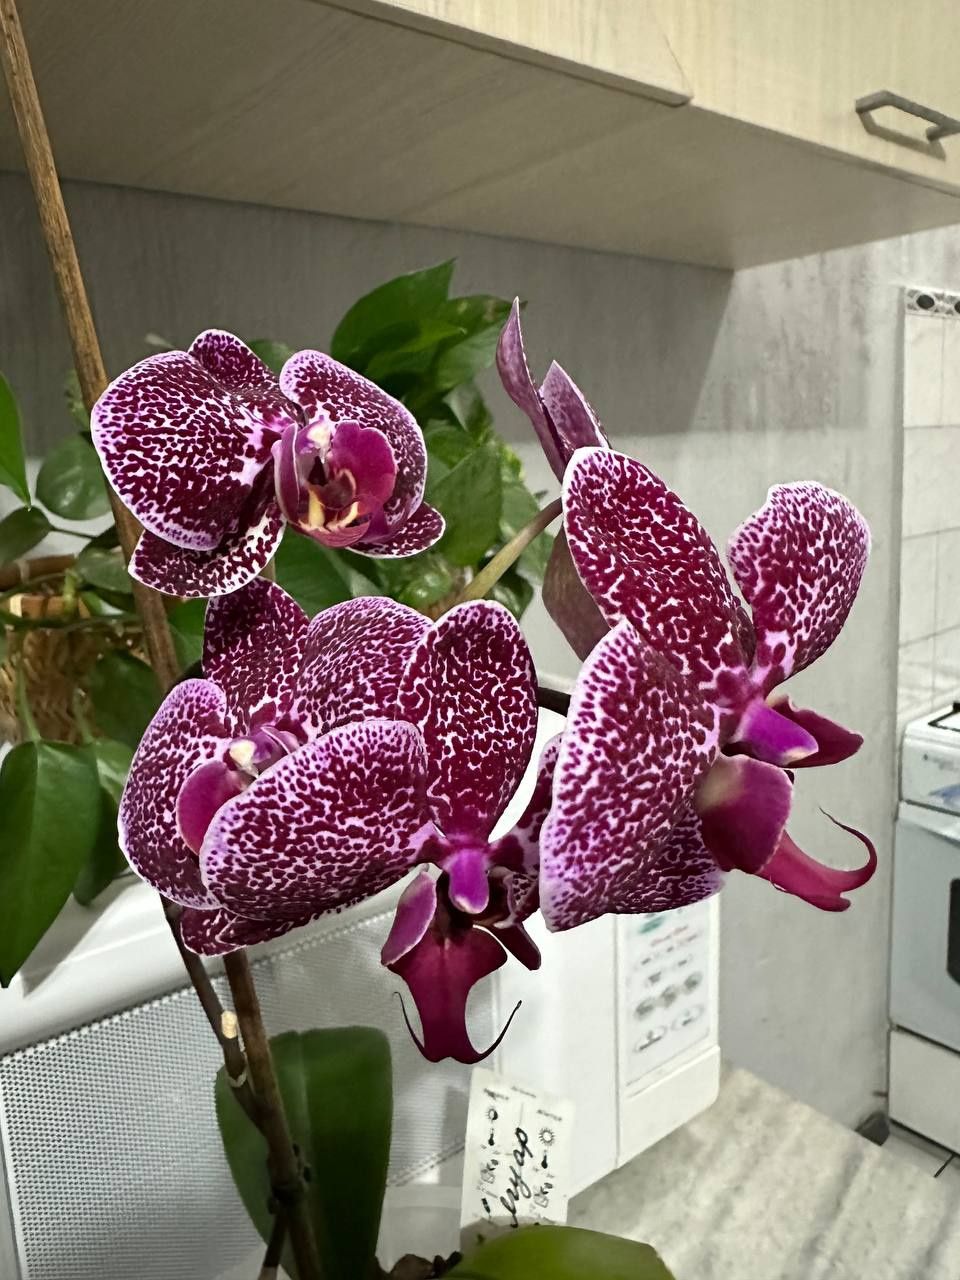 Продаётся орхидея Ягуар: 180 000 сум - Комнатные растения Ташкент на Olx